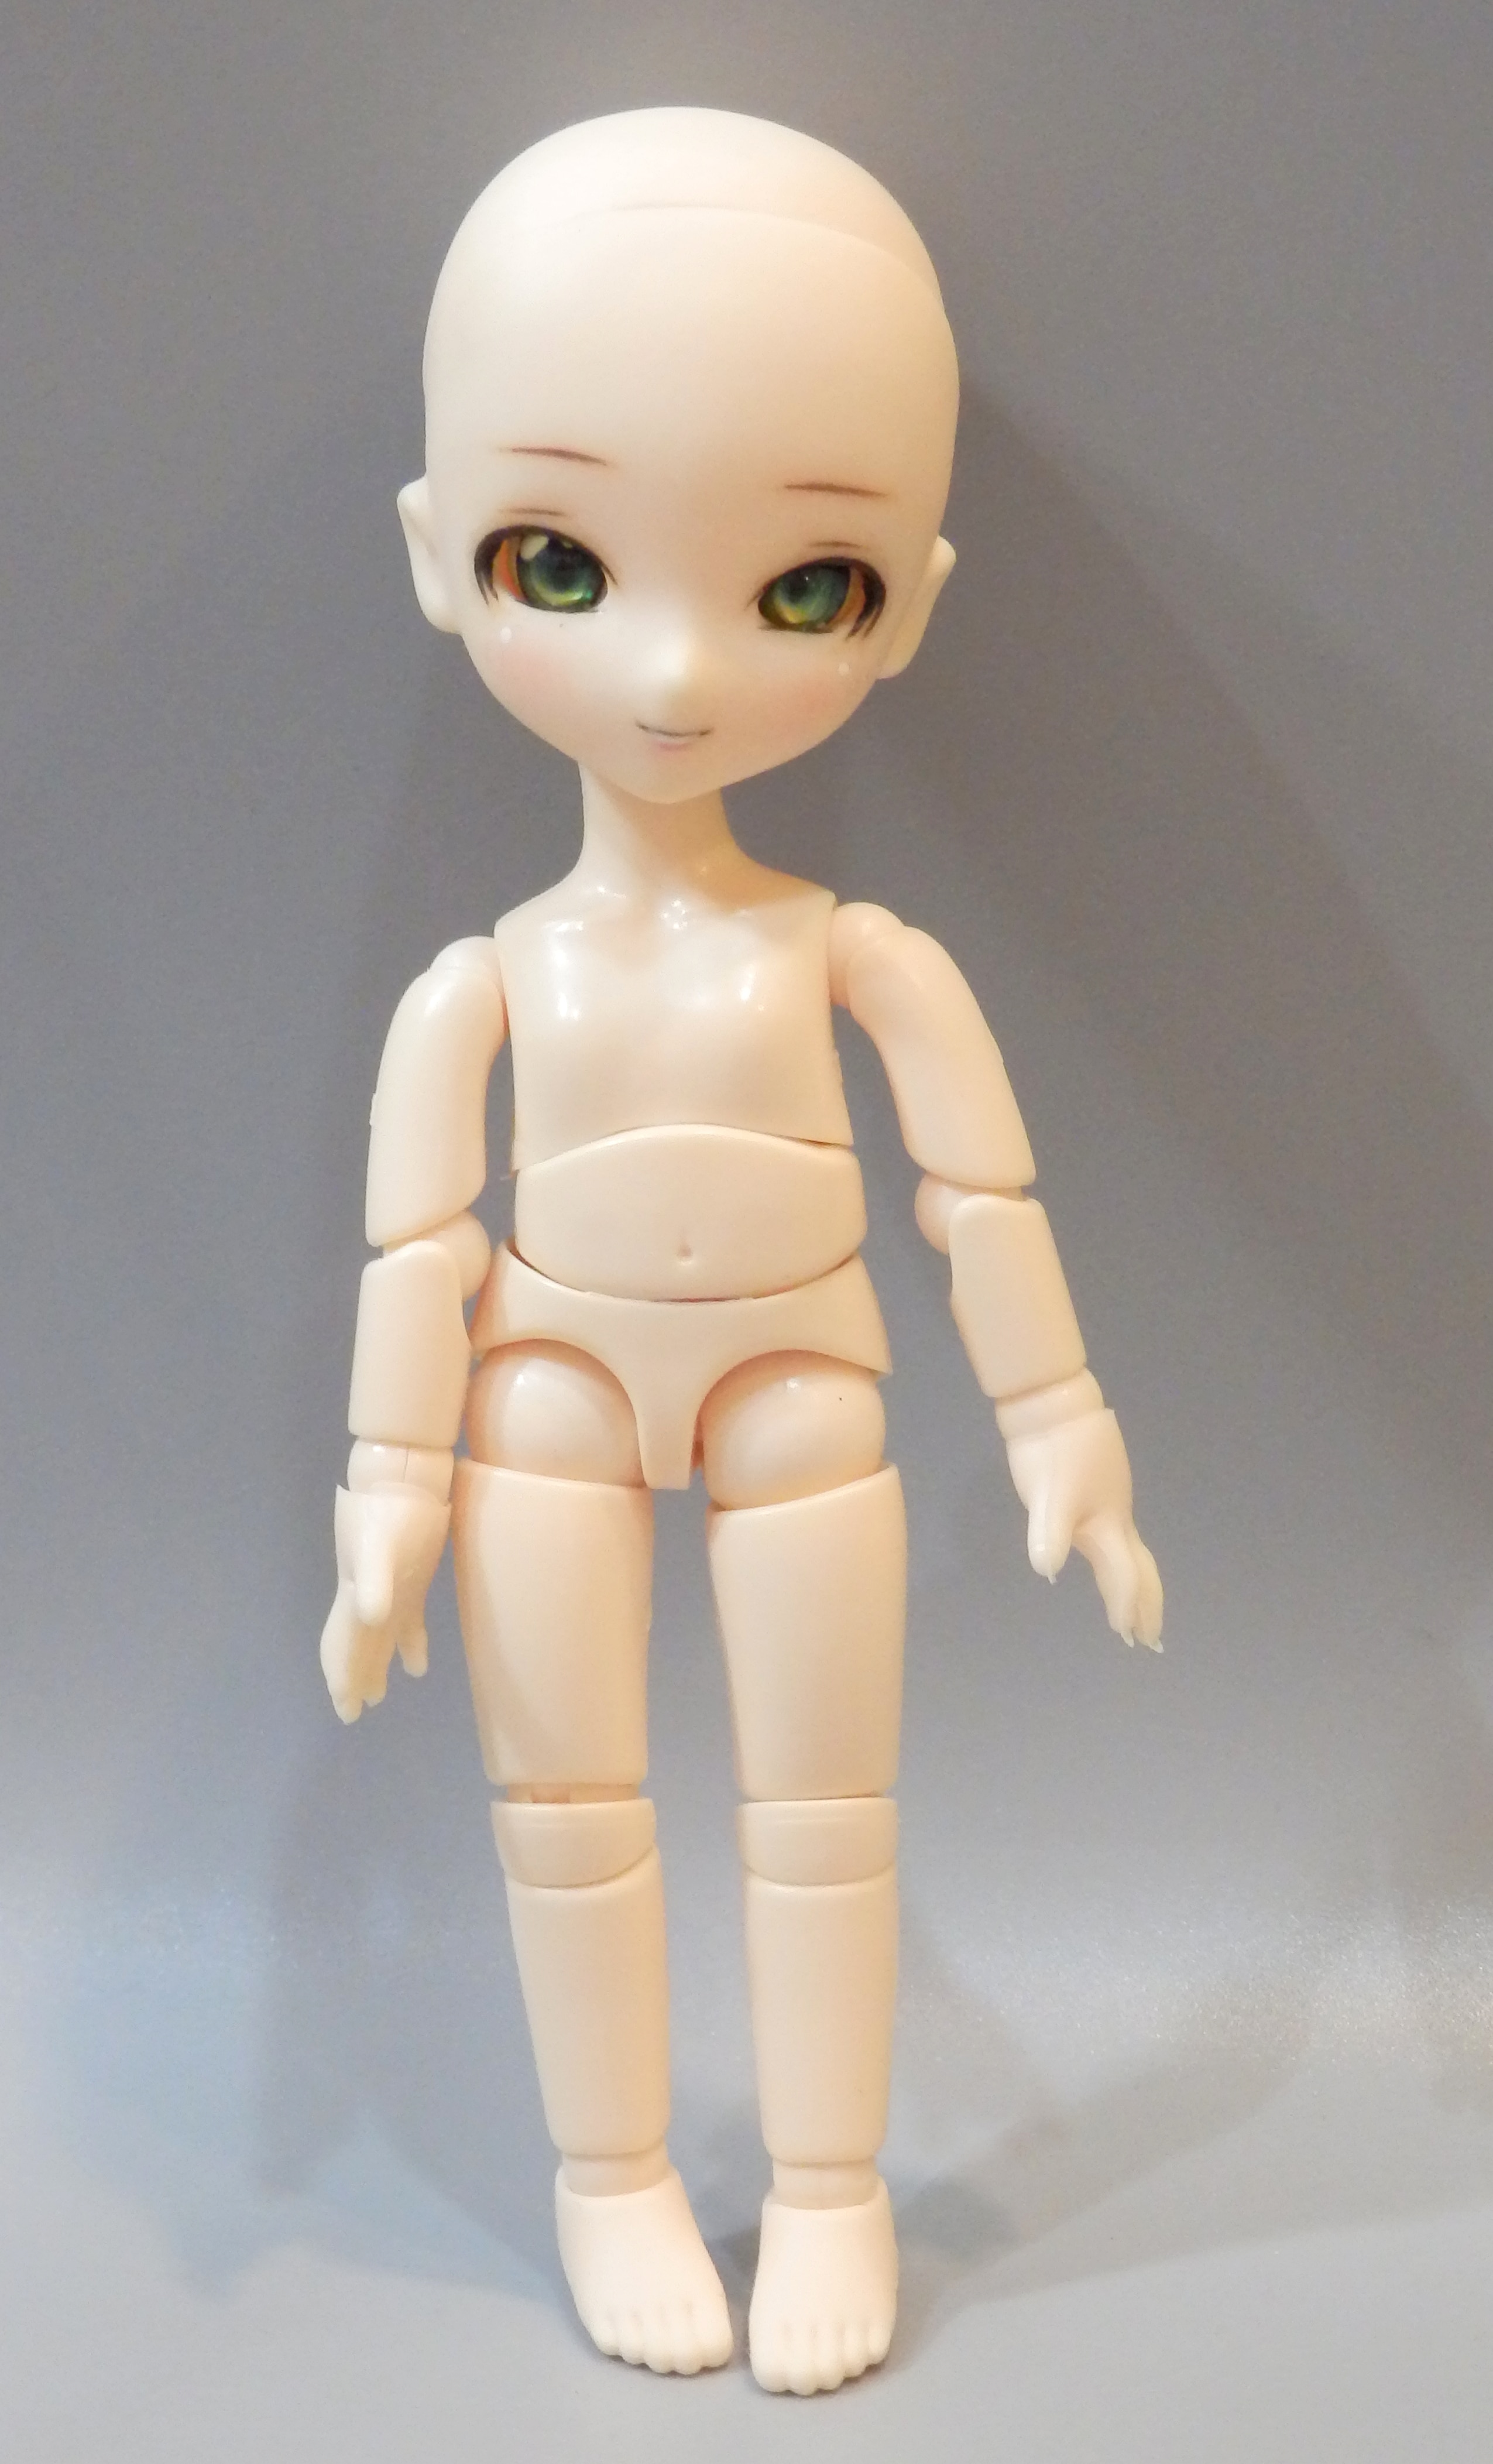 DOLLCE ミニスウィーツドール DC−02 カスタムヘッド - おもちゃ/人形